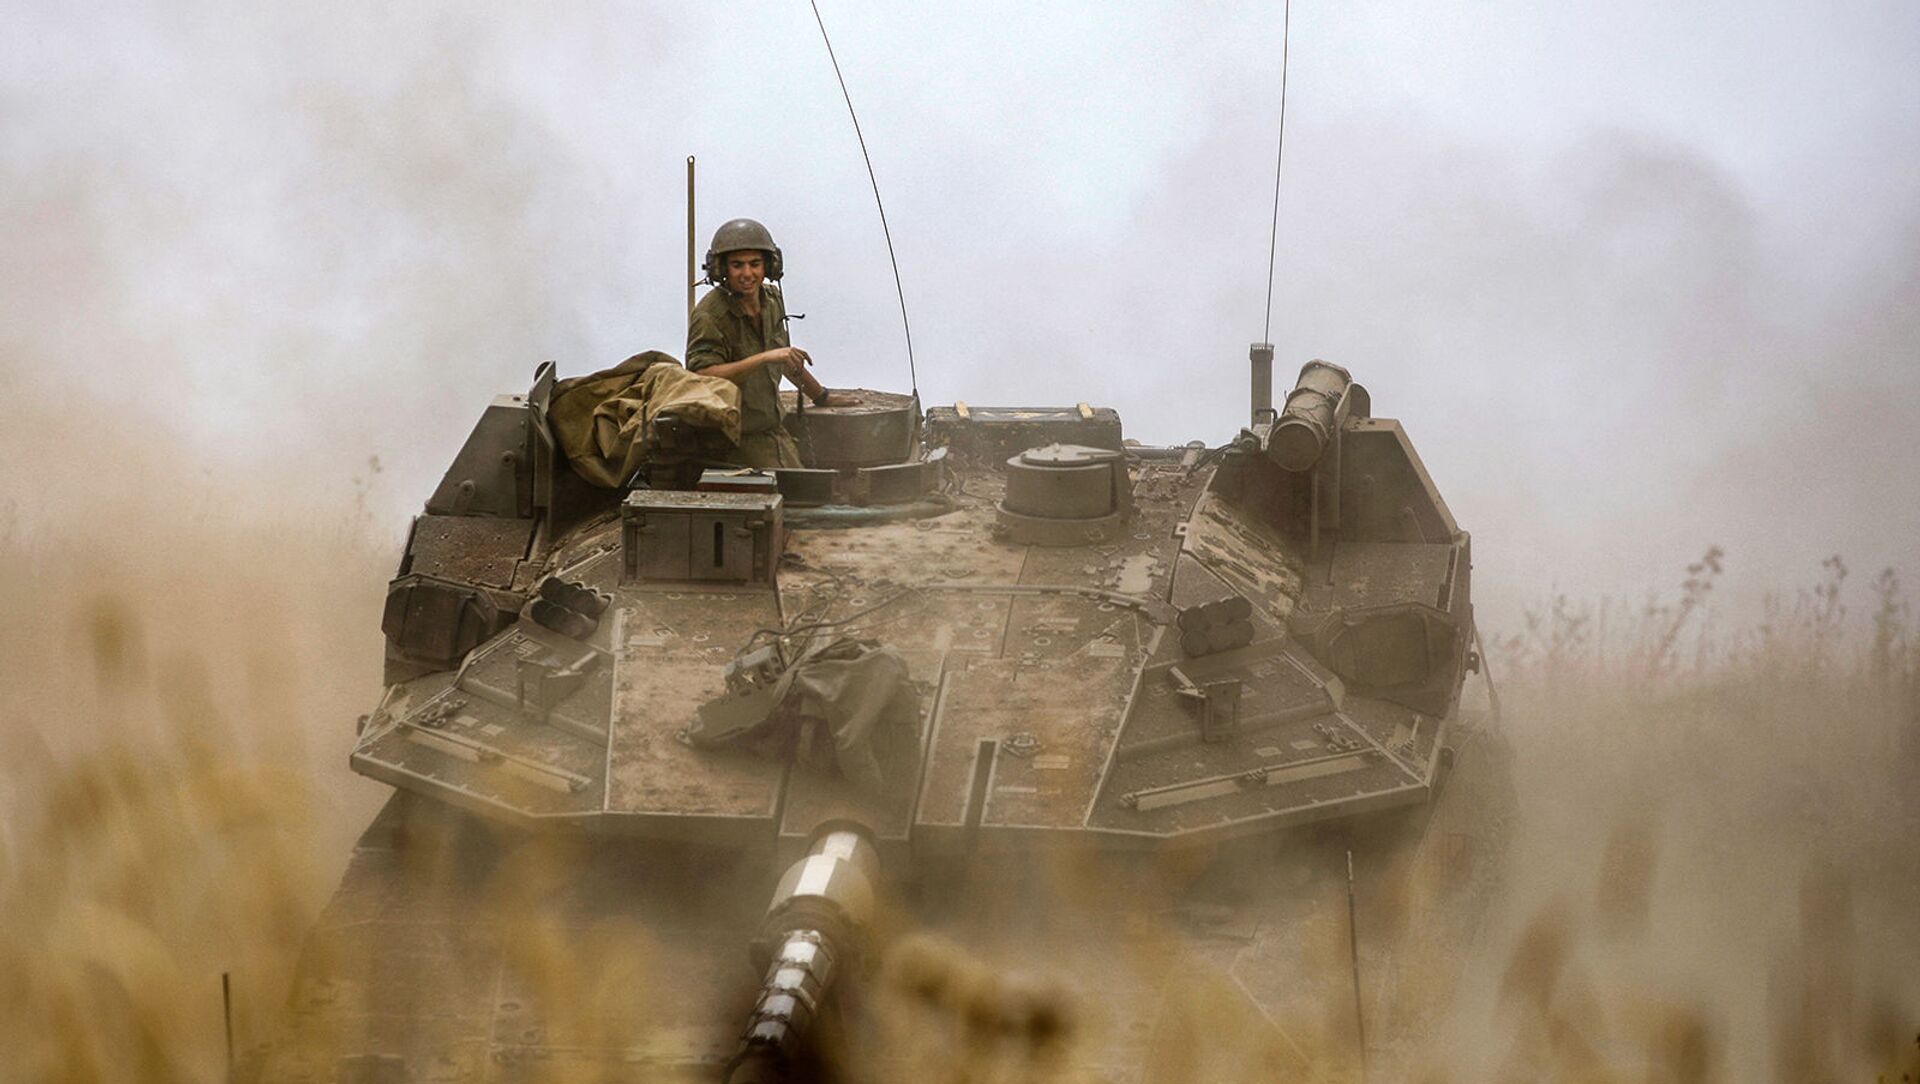 Израильский солдат на боевом танке Меркава Марк IV во время учений возле поселения Кела Алон на Голанских высотах, аннексированных Израилем (9 мая 2021). - Sputnik Армения, 1920, 10.05.2021